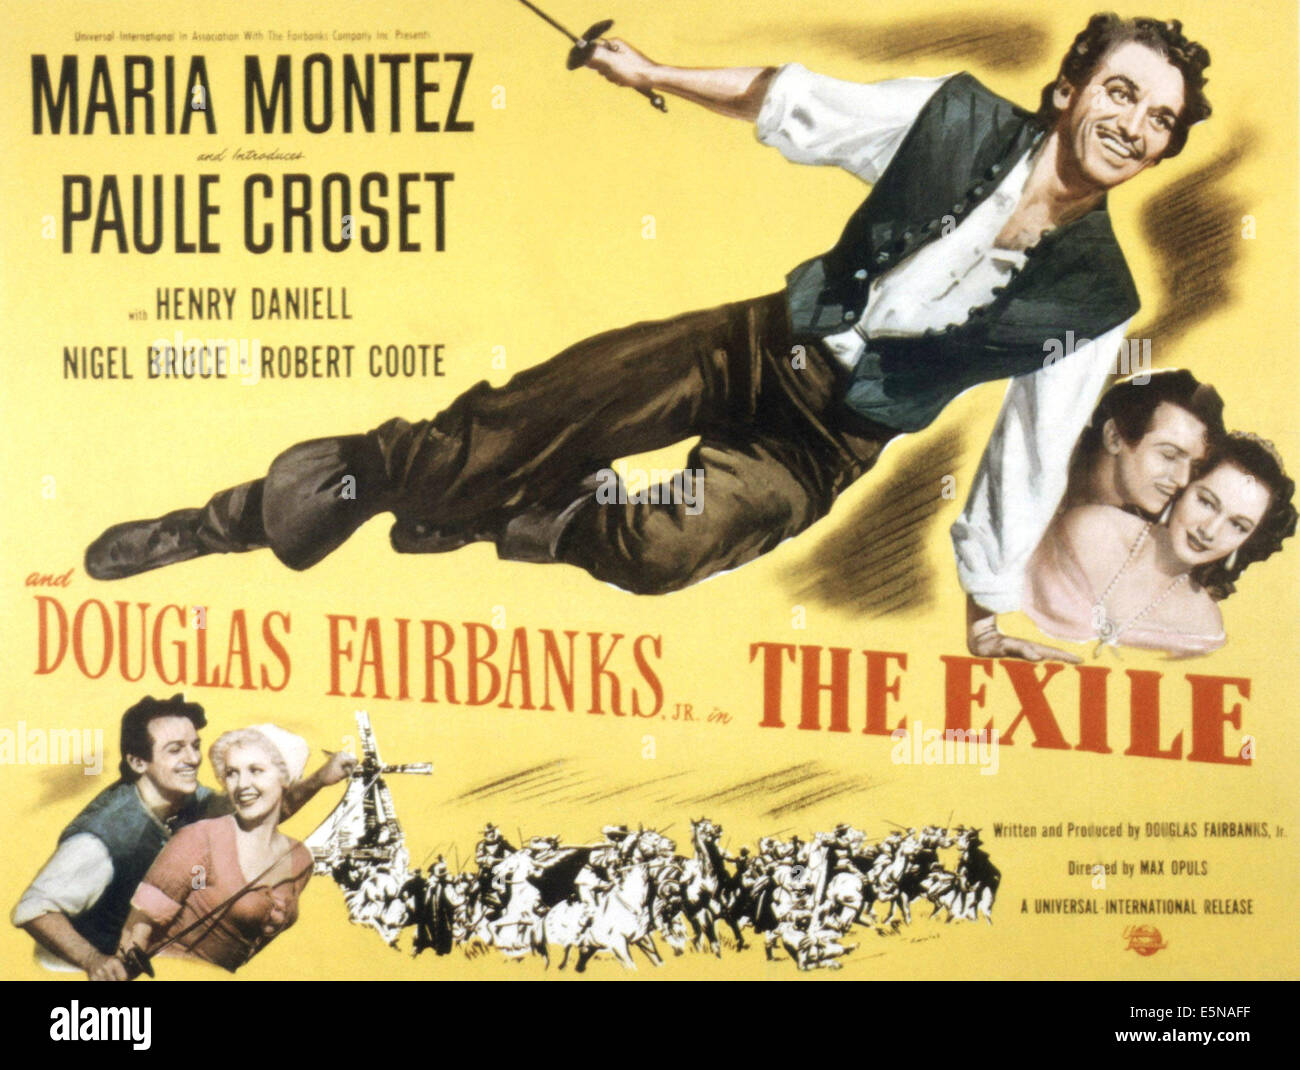 THE EXILE, Douglas Fairbanks, Jr., Maria Montez, 1947 Stock Photo